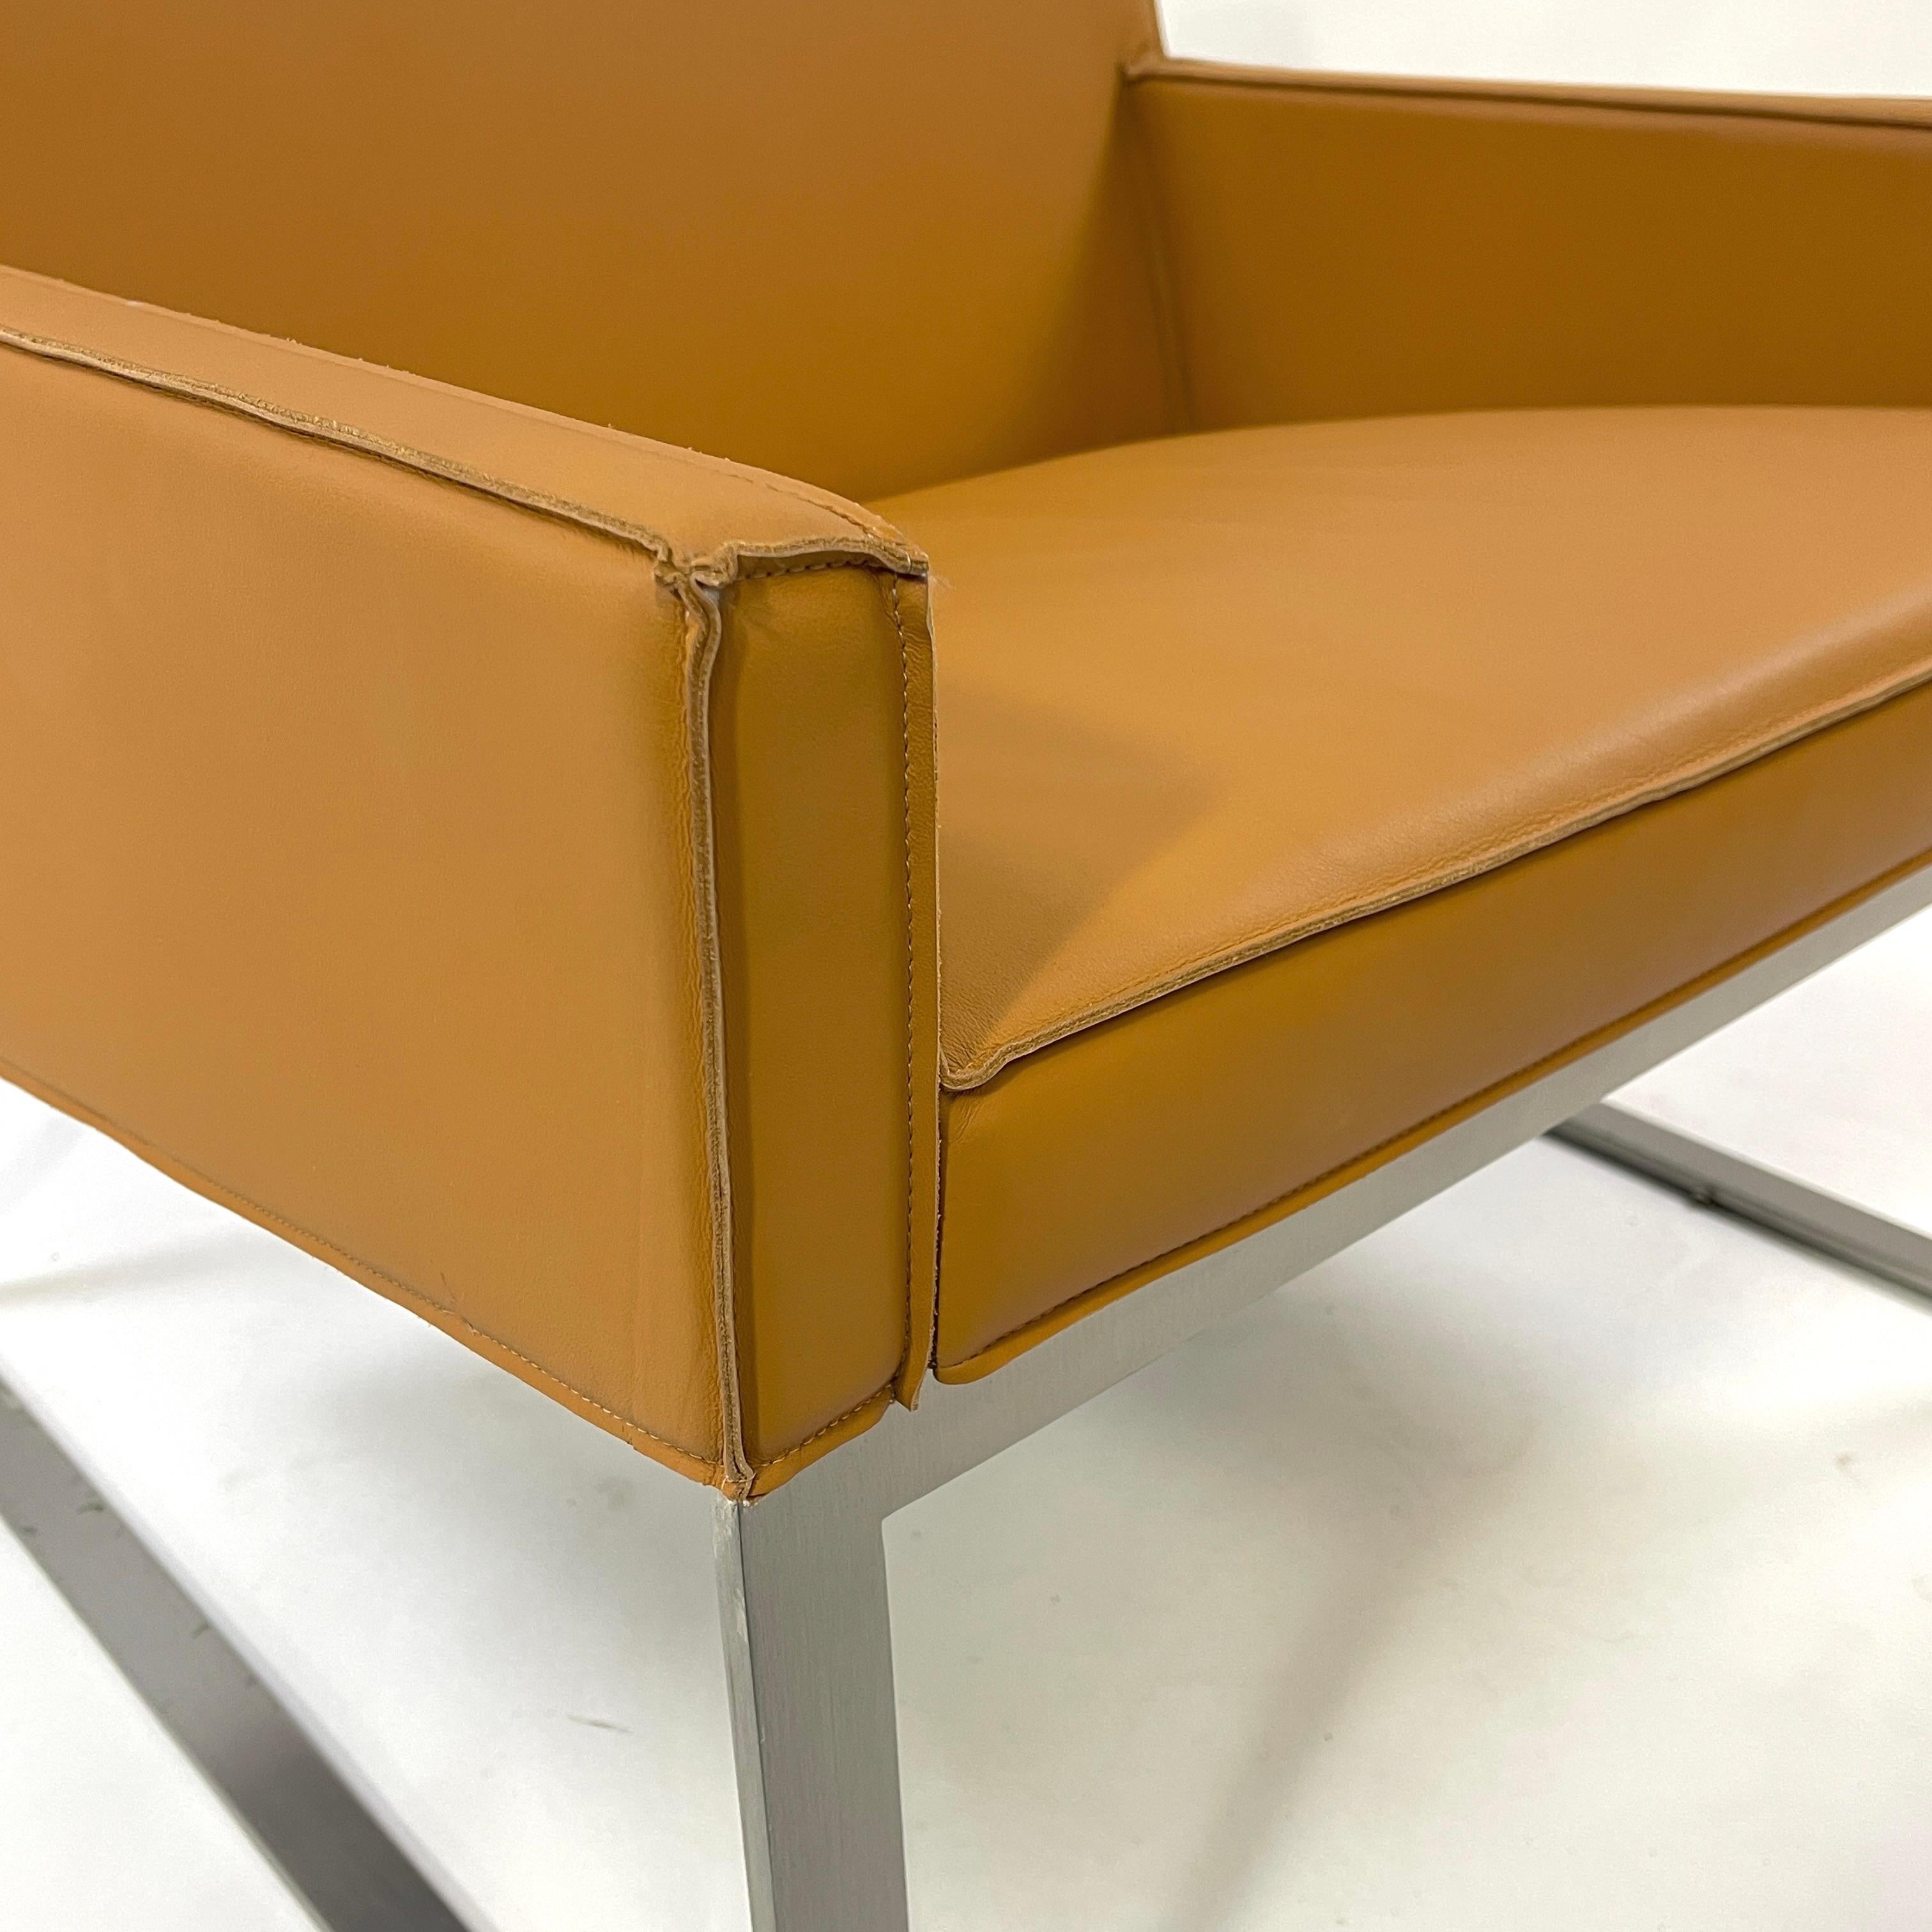 La chaise longue 'B3', conçue par Fabien Baron pour Bernhardt, est tout simplement magnifique. Bernhardt a relevé le défi avec ce design époustouflant. Ces chaises ont été fabriquées sur mesure avec un cuir tanné doux comme du beurre, avec de